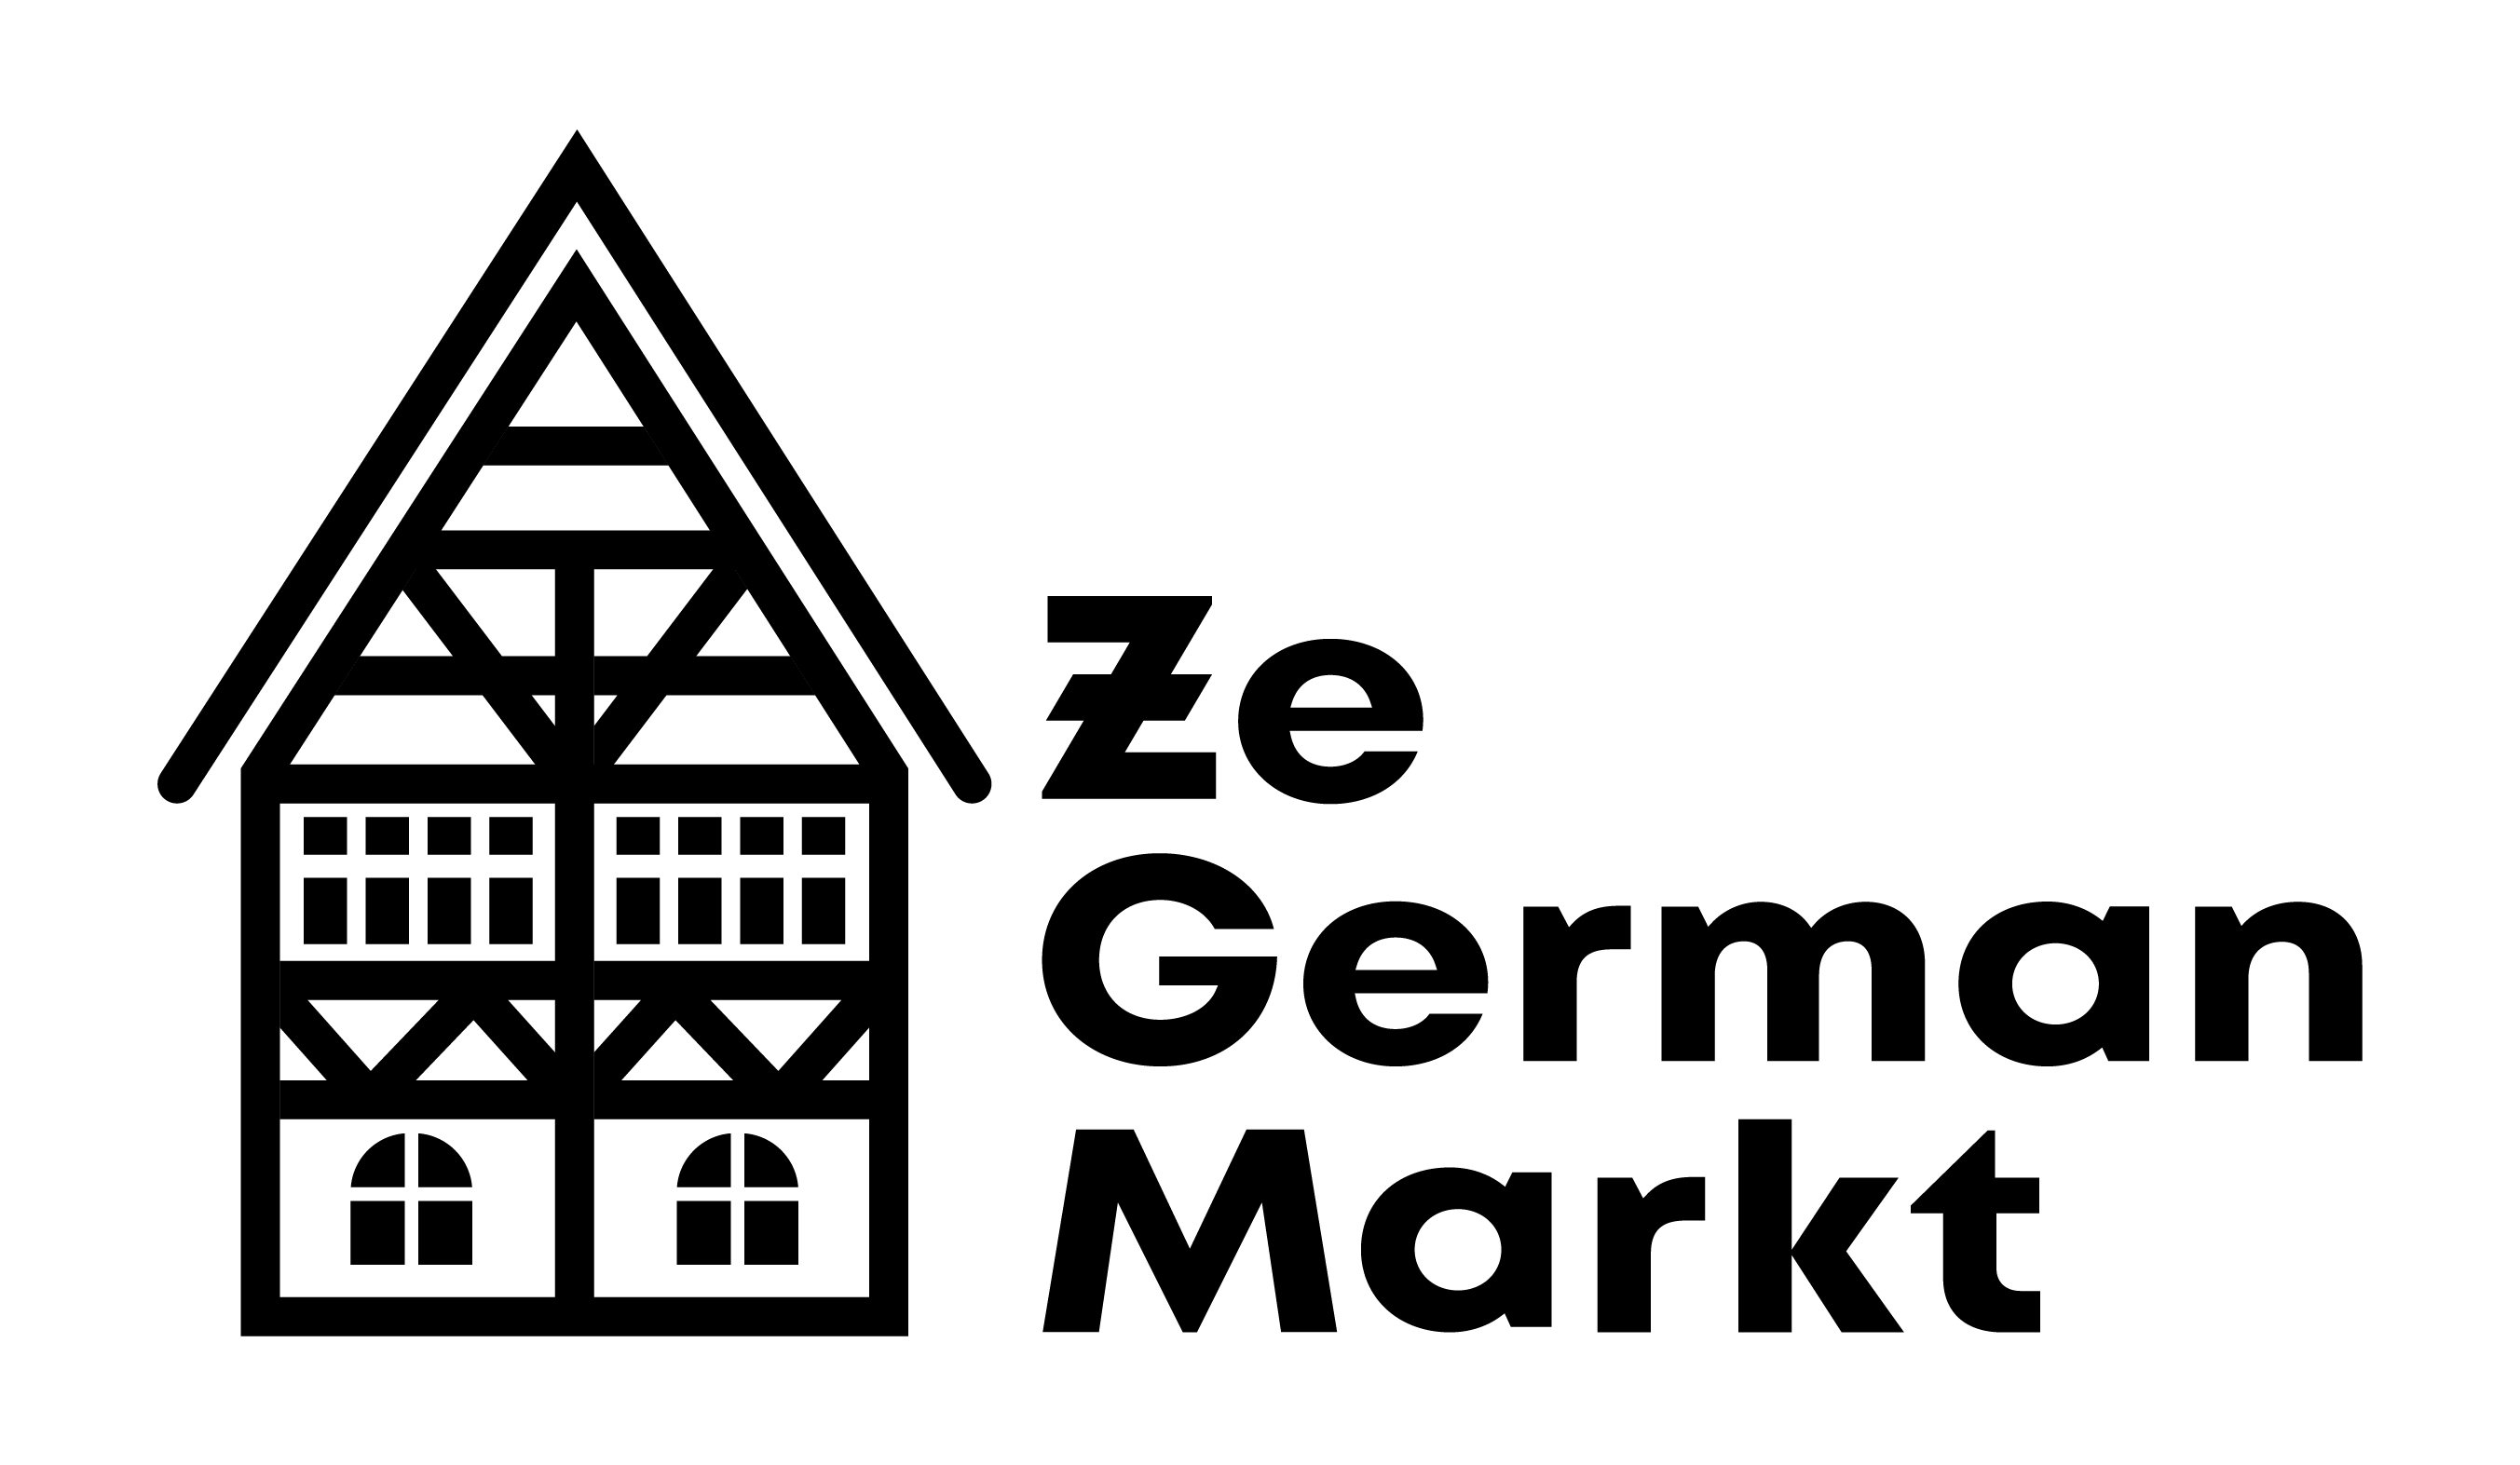 Ze German Markt